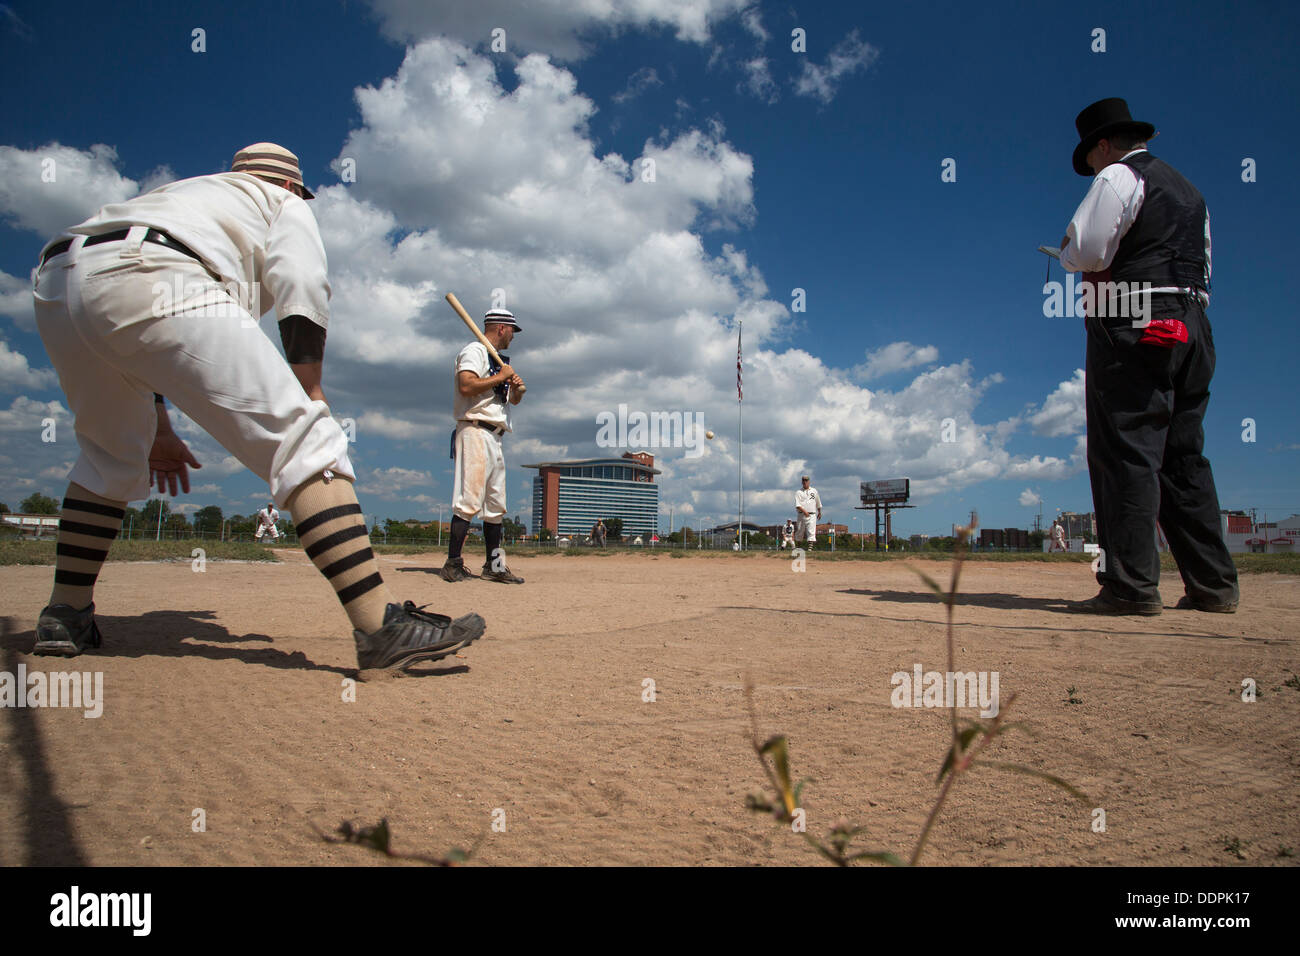 Detroit, Michigan - un jeu de base ball vintage entre les étoiles et la Wyandotte vieux Saginaw en utilisant les règles d'Or, les années 1860. Banque D'Images